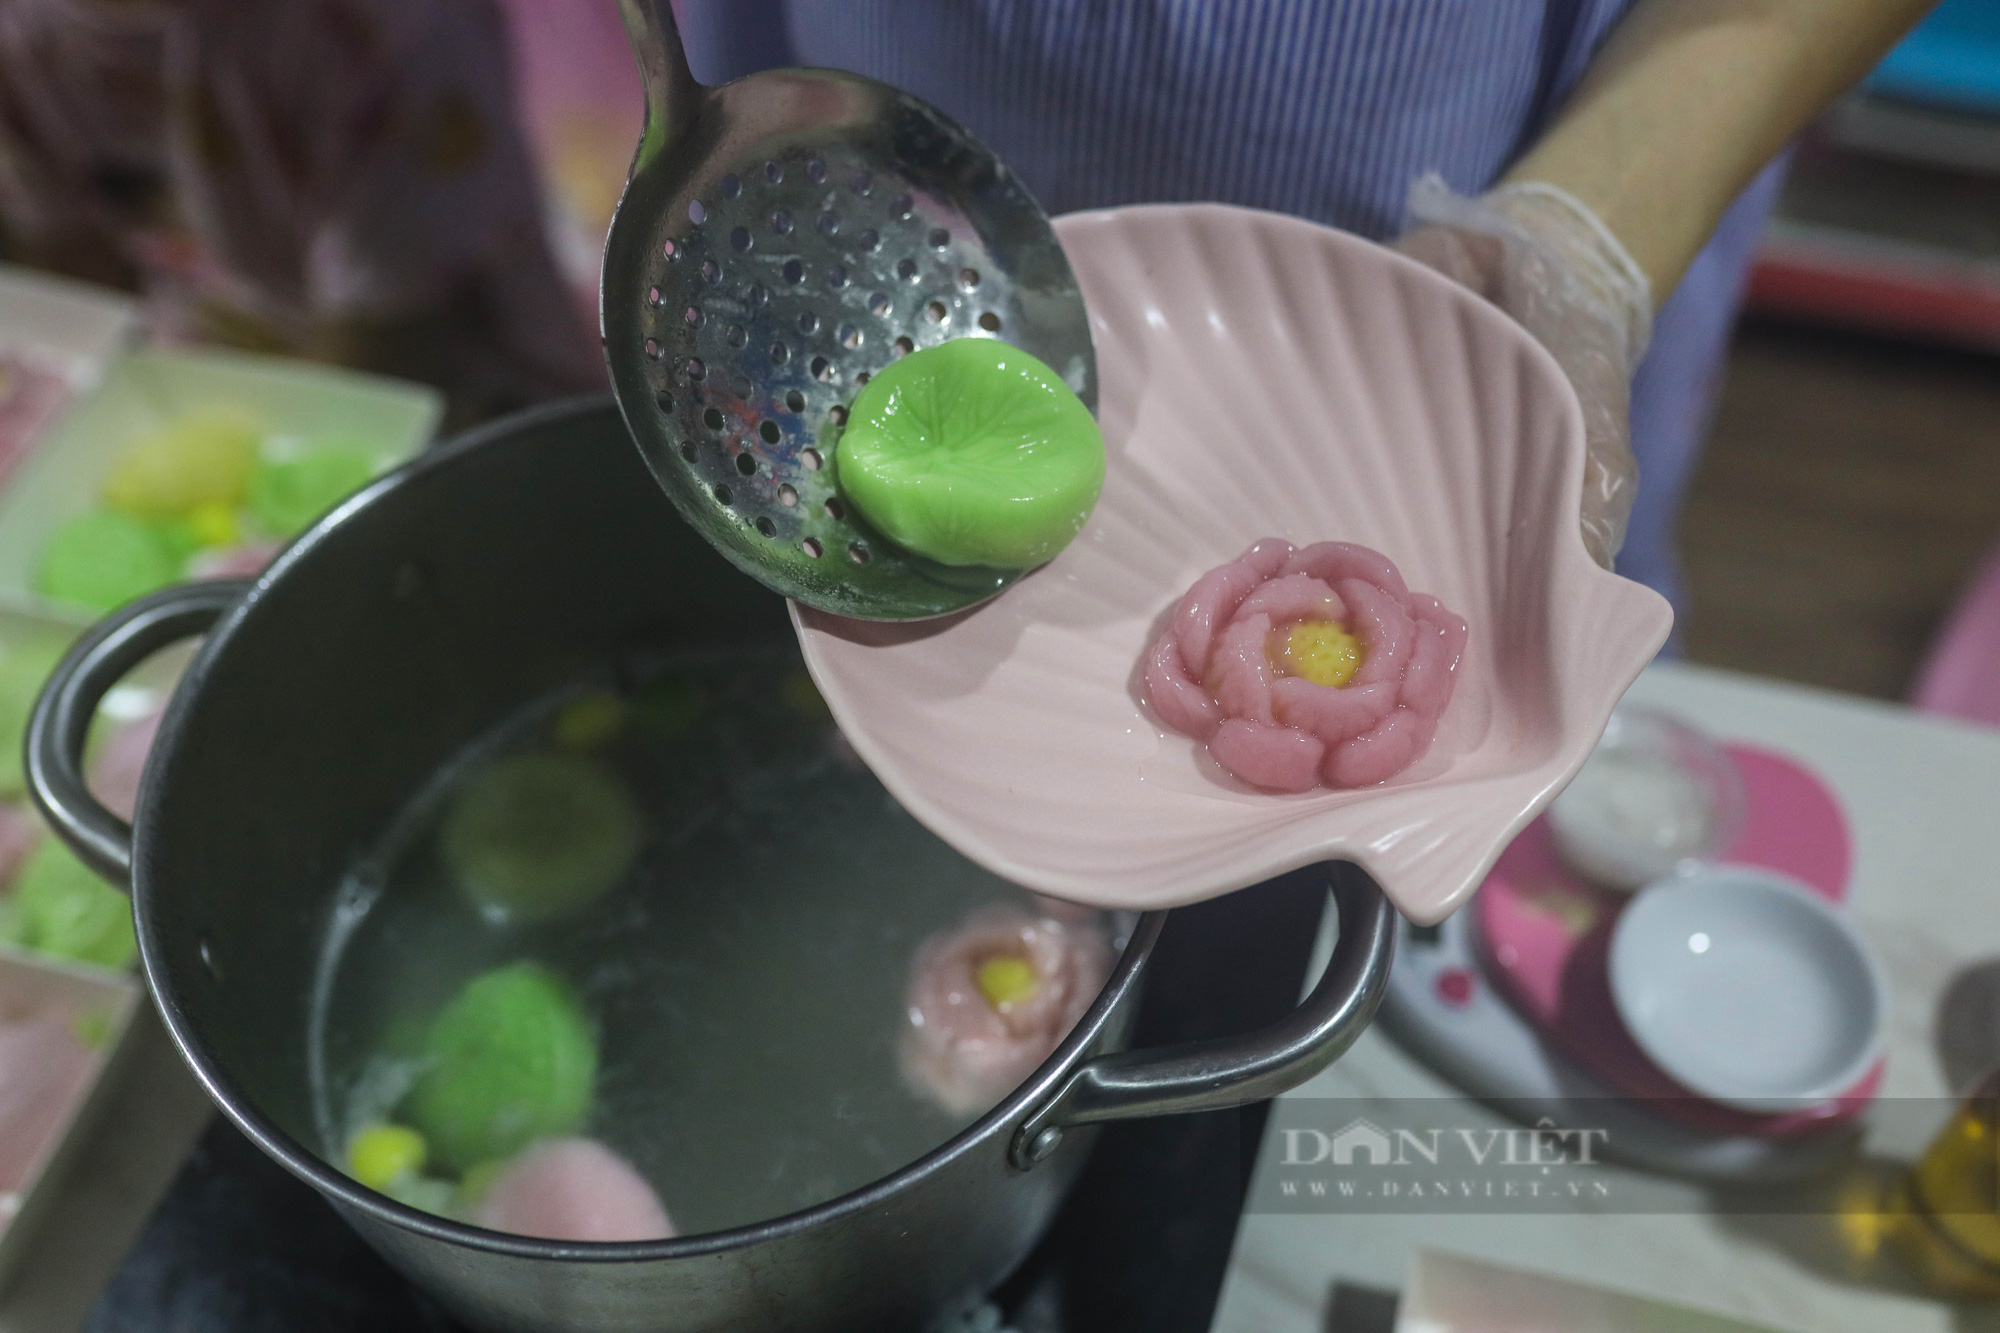 Kiếm chục triệu mỗi ngày dịp lễ Vu Lan nhờ việc làm bánh trôi hoa sen bán online - Ảnh 10.